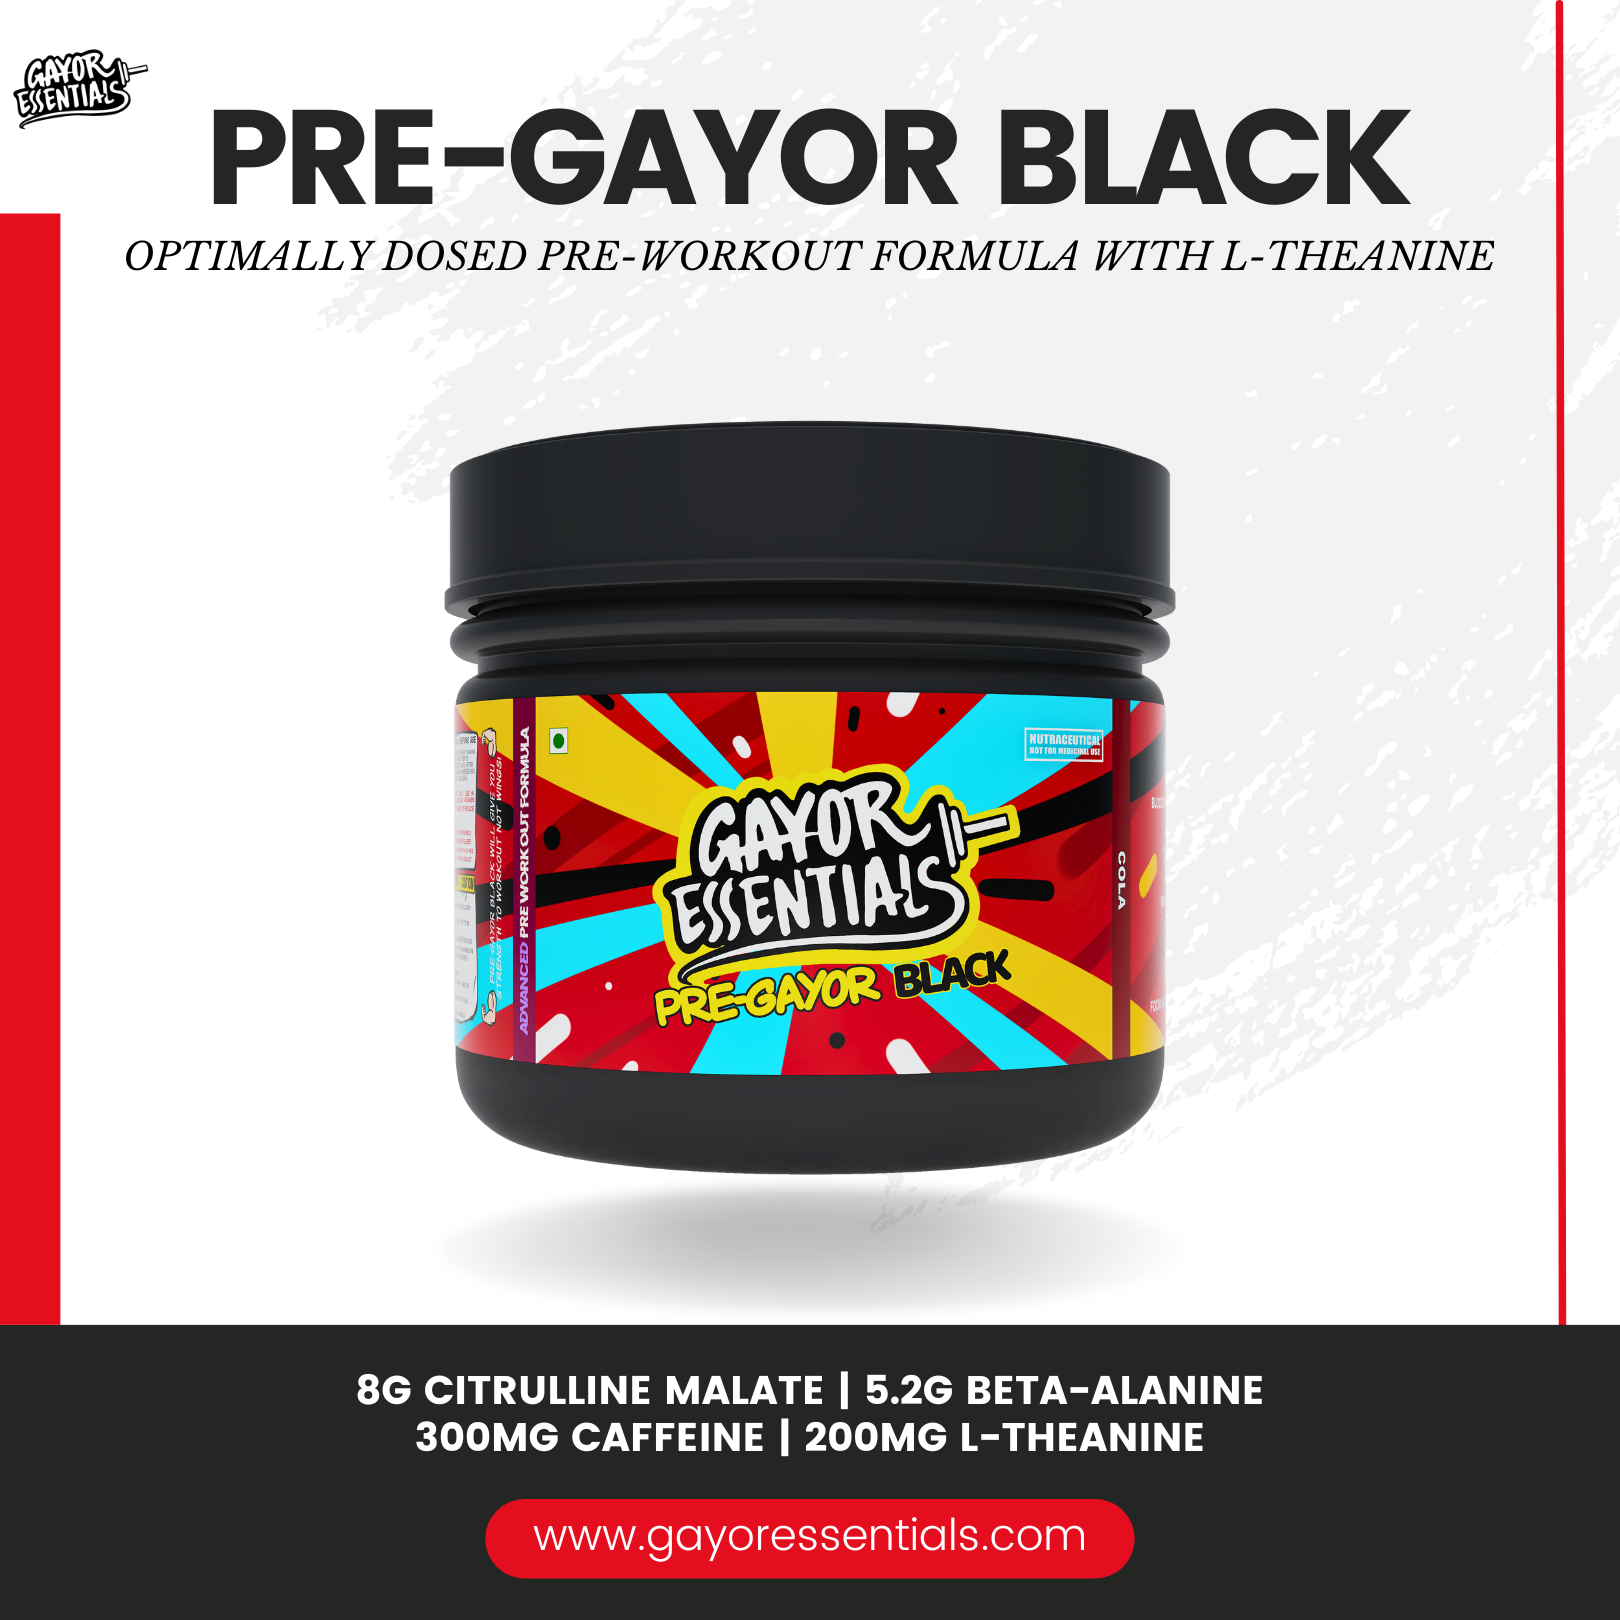 2 x Pre Gayor Black + Steel Shaker Bundle